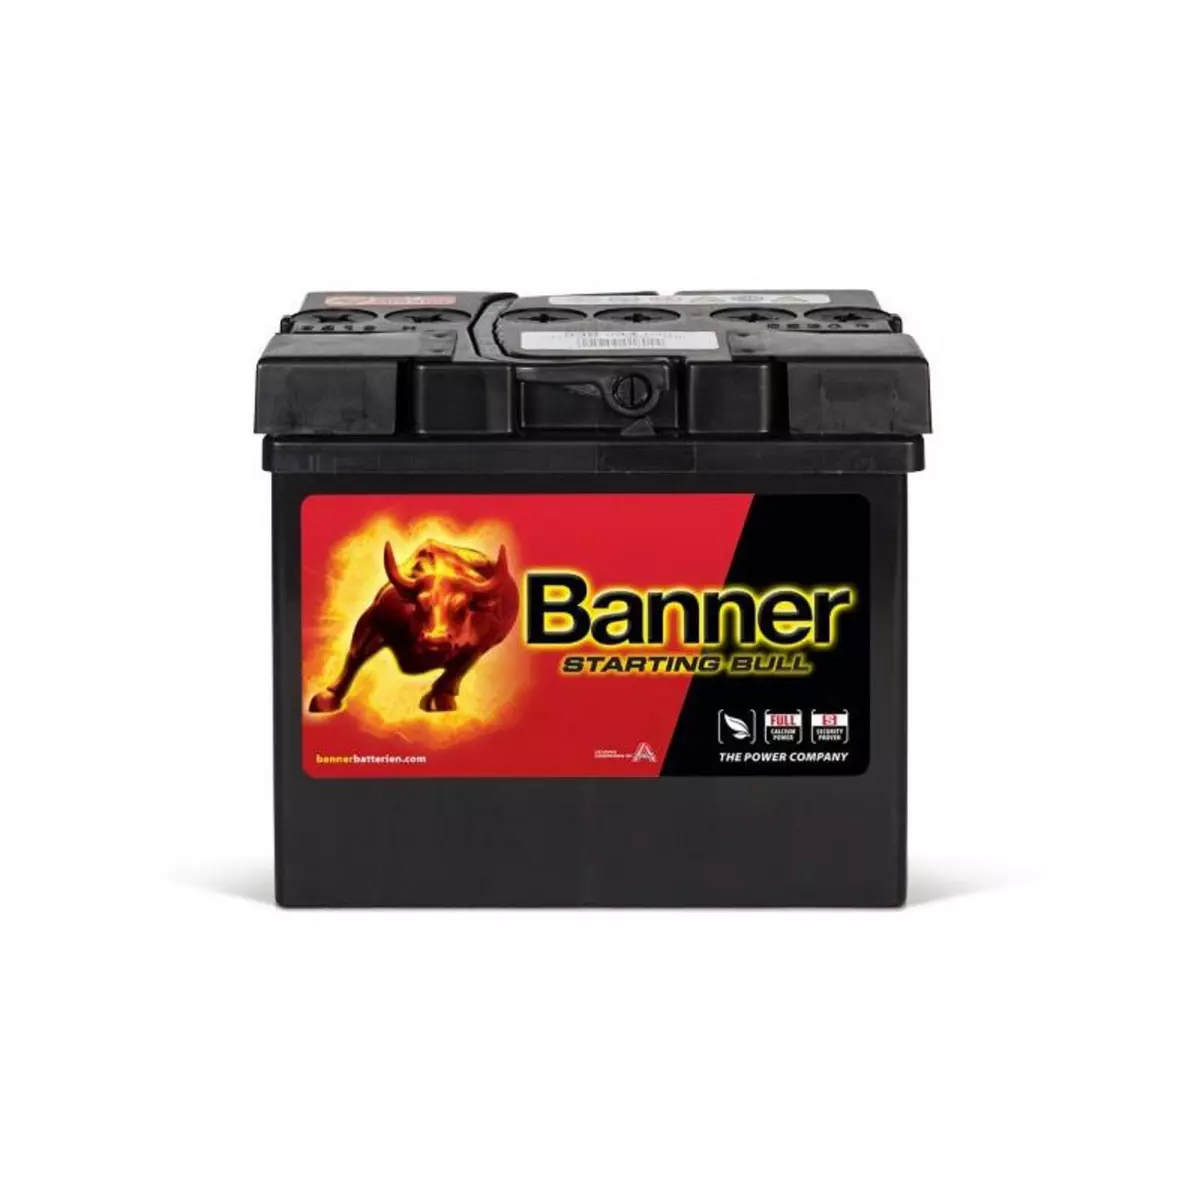 BANNER Batterie Starting Bull Banner 53034 12v 30ah 300A